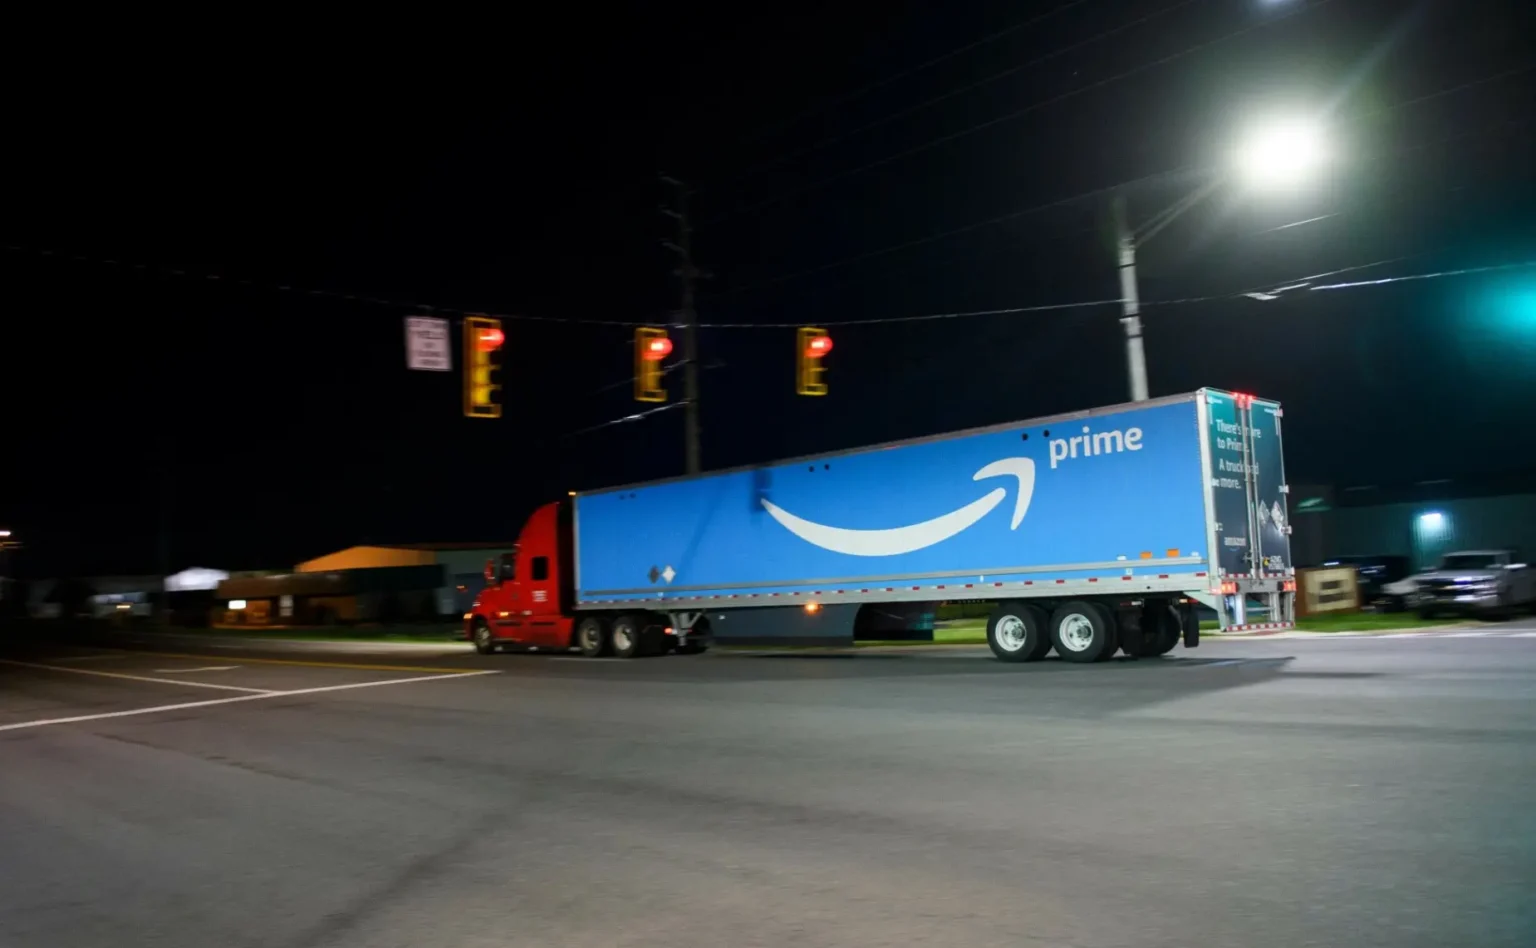 ESG Amazona. Ciężarówka z logo Amazon Prime / Fot. PATRICK T. FALLON/AFP/East News